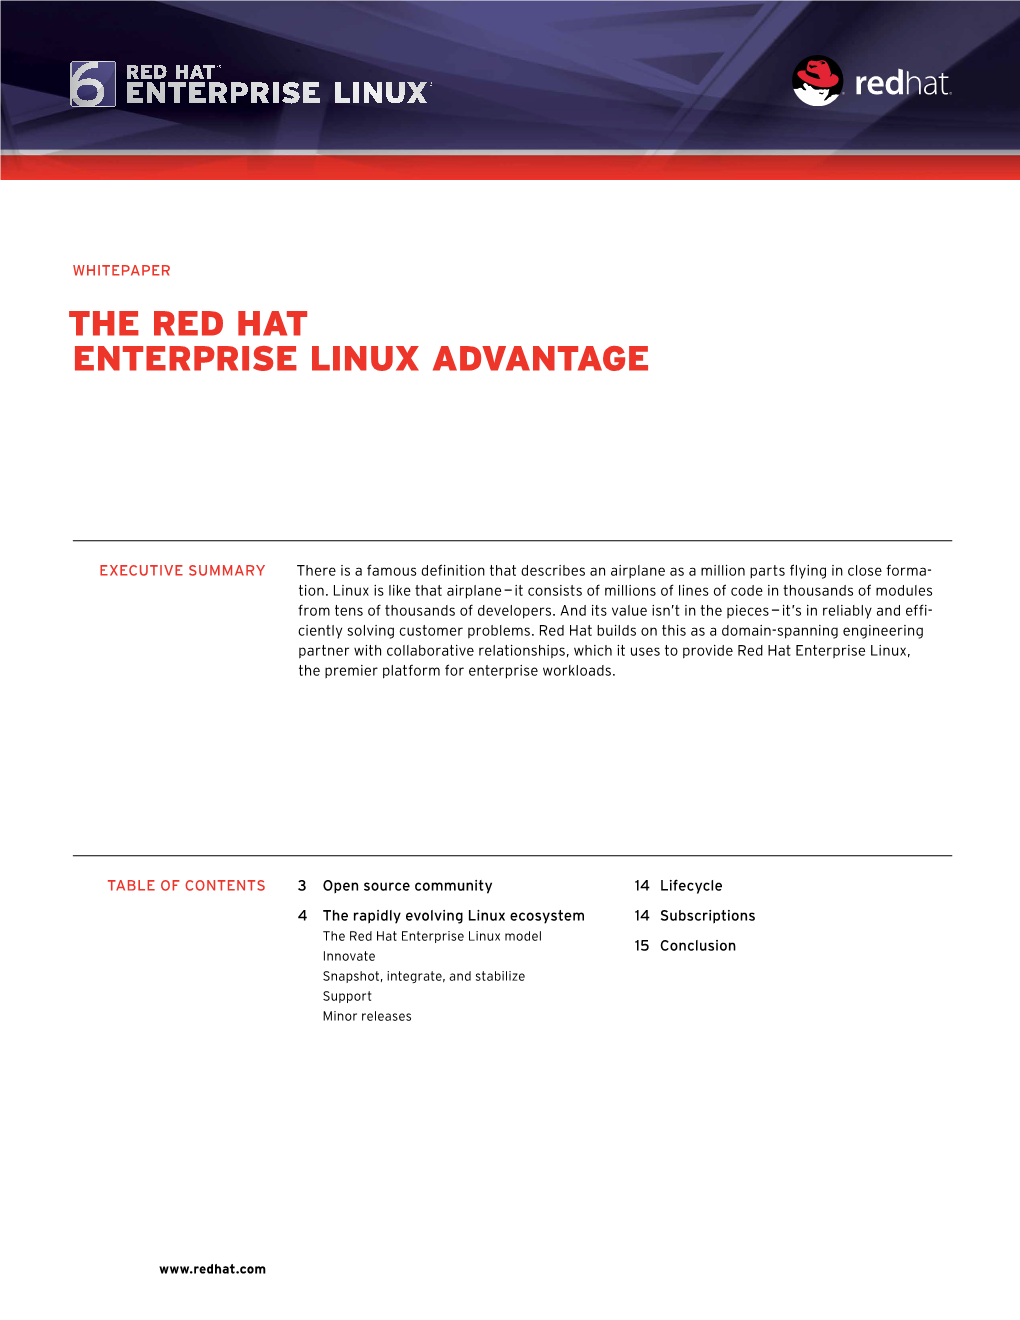 The Red Hat Enterprise Linux Advantage